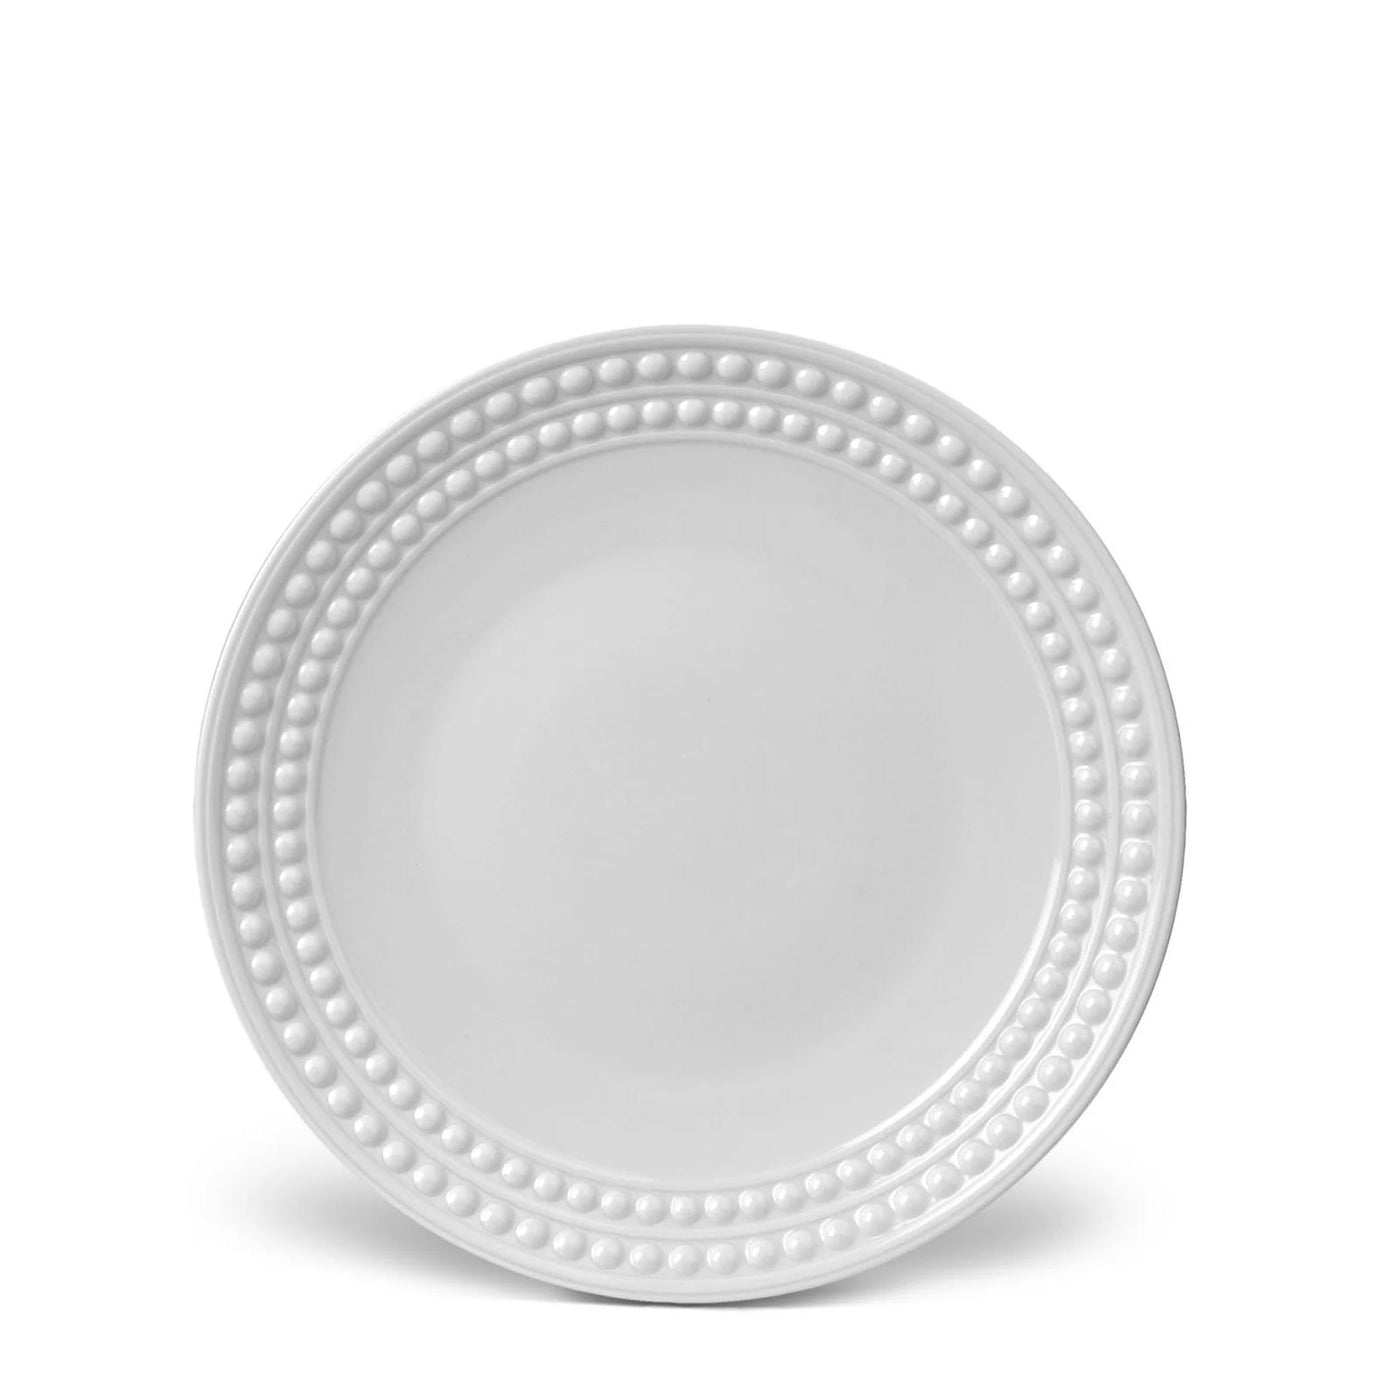 Perlée White Dinnerware